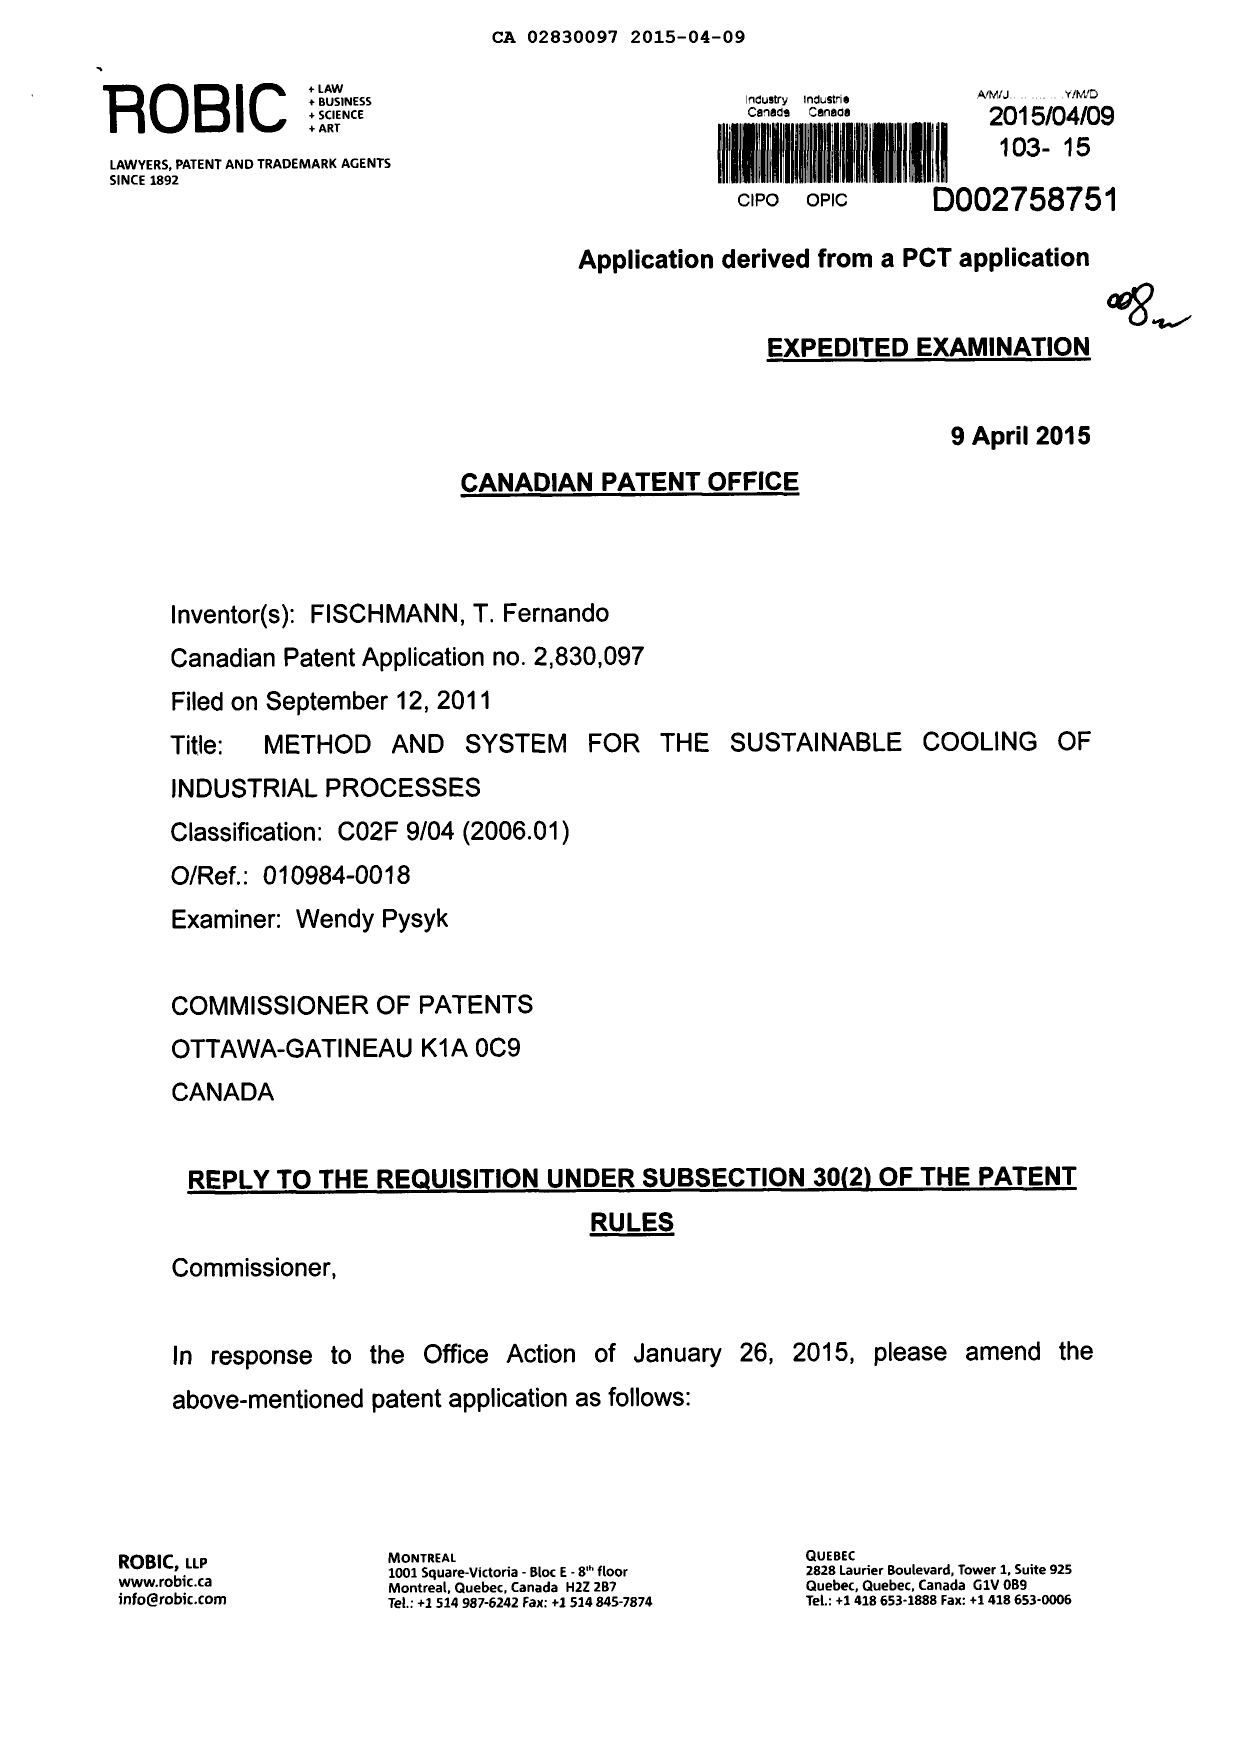 Document de brevet canadien 2830097. Poursuite-Amendment 20150409. Image 1 de 5